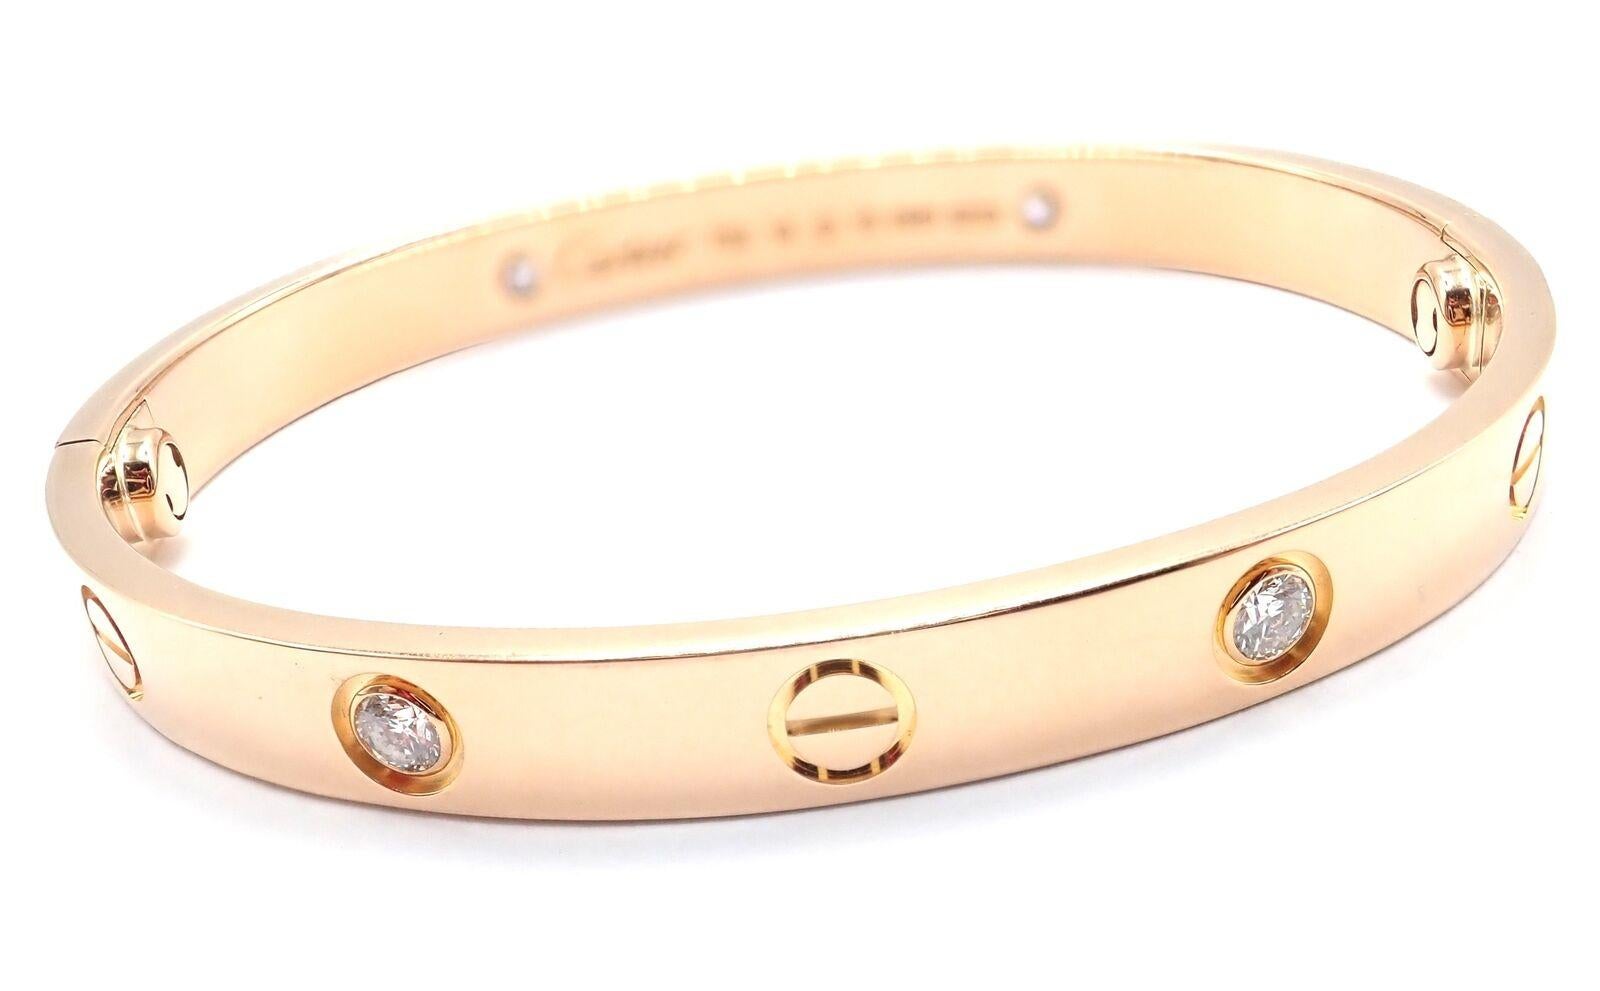 Bracelet en or rose 18k à 4 diamants Cartier LOVE. Taille 16. 
Ce bracelet est accompagné du certificat d'authenticité Cartier de 2014, de la boîte Cartier et d'un tournevis.
Ce bracelet est doté d'un système de vis d'un nouveau genre.
Avec 4